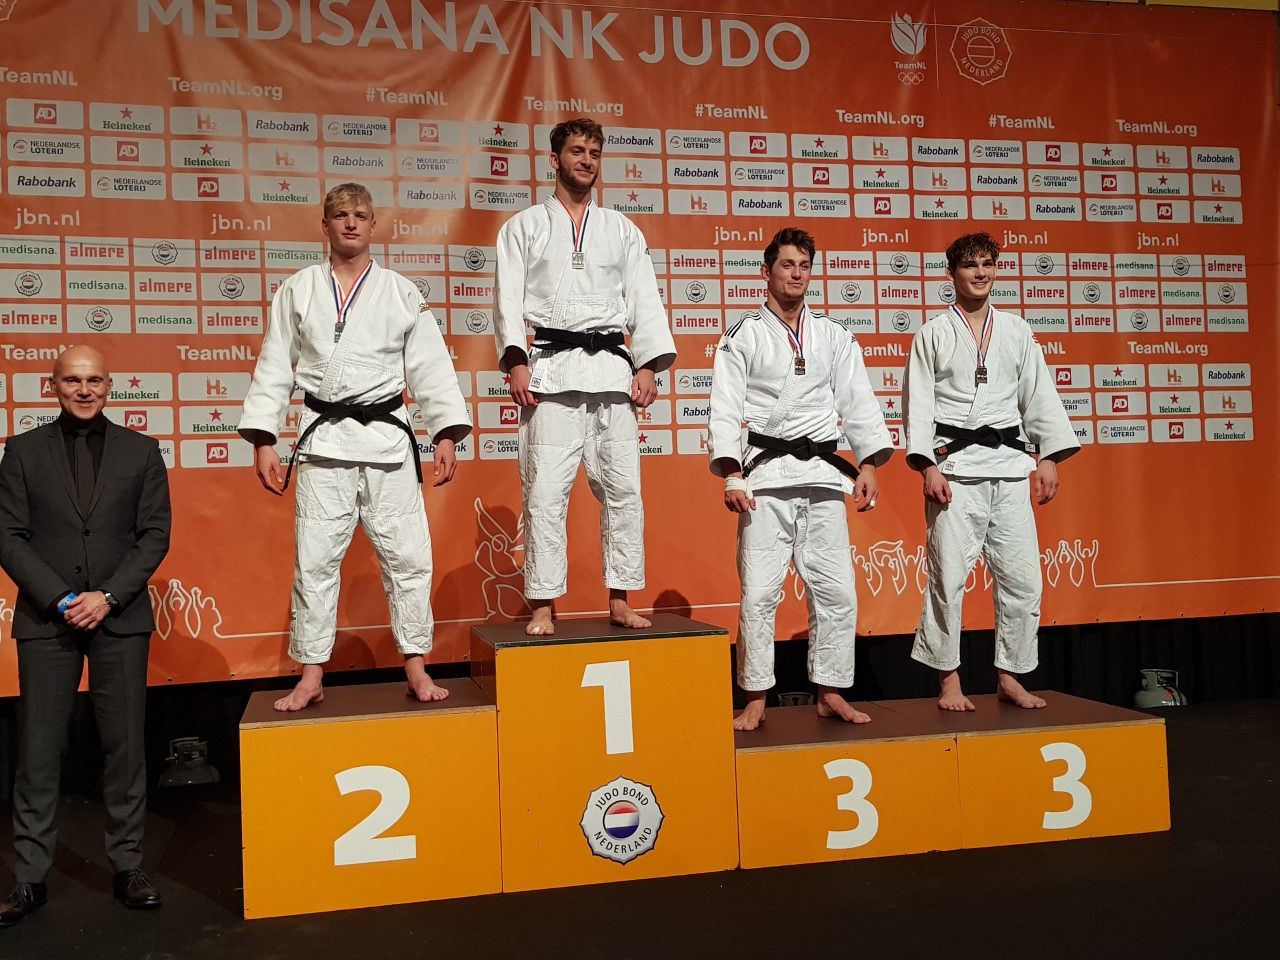 Coen van Winden Nederlands kampioen judo